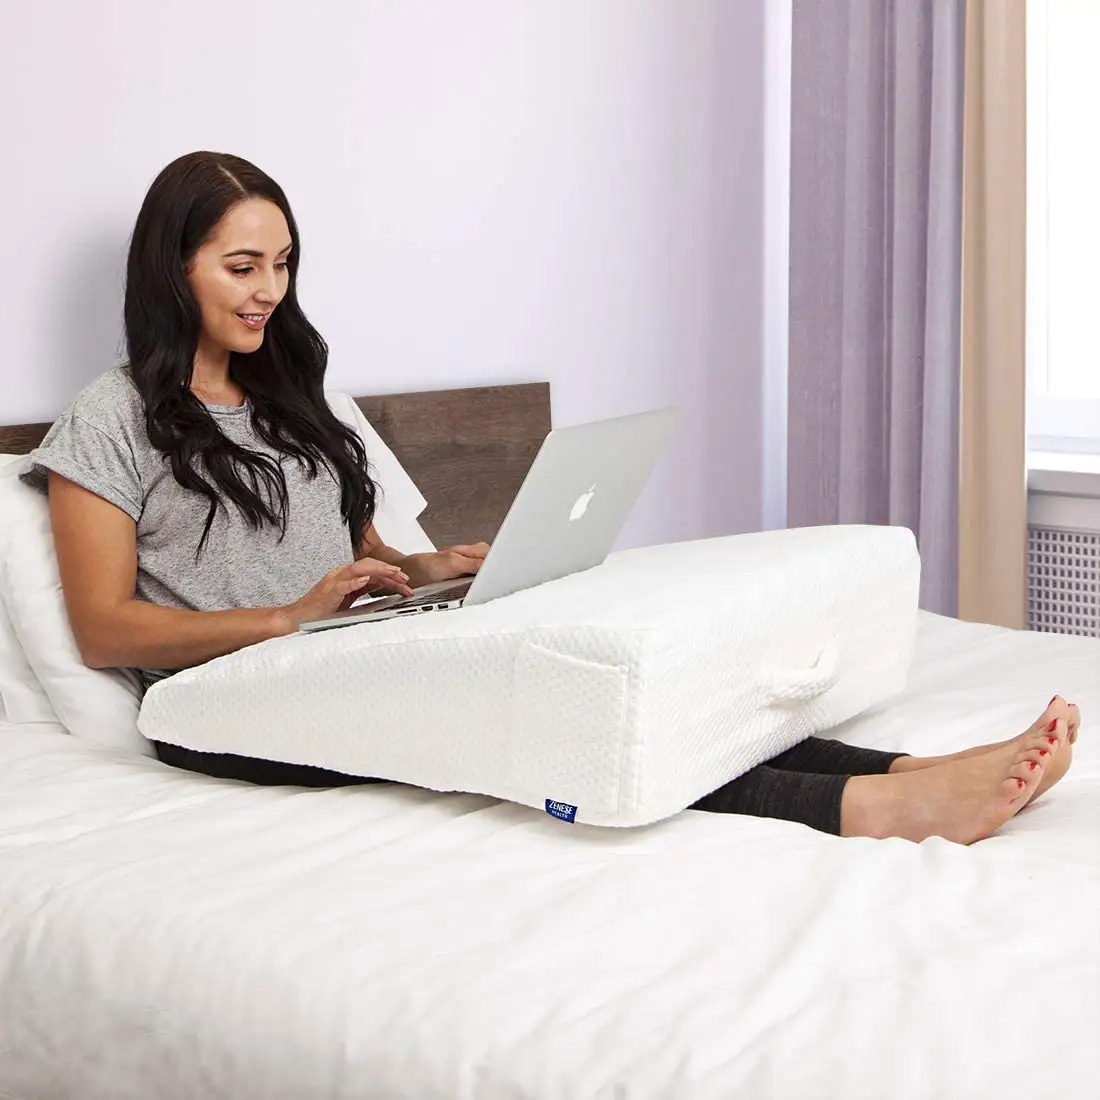 Toptan bacak yüksekliği yastık çıkarılabilir kapak ile bellek köpük yatak kama yastık desteği yastık uyku için